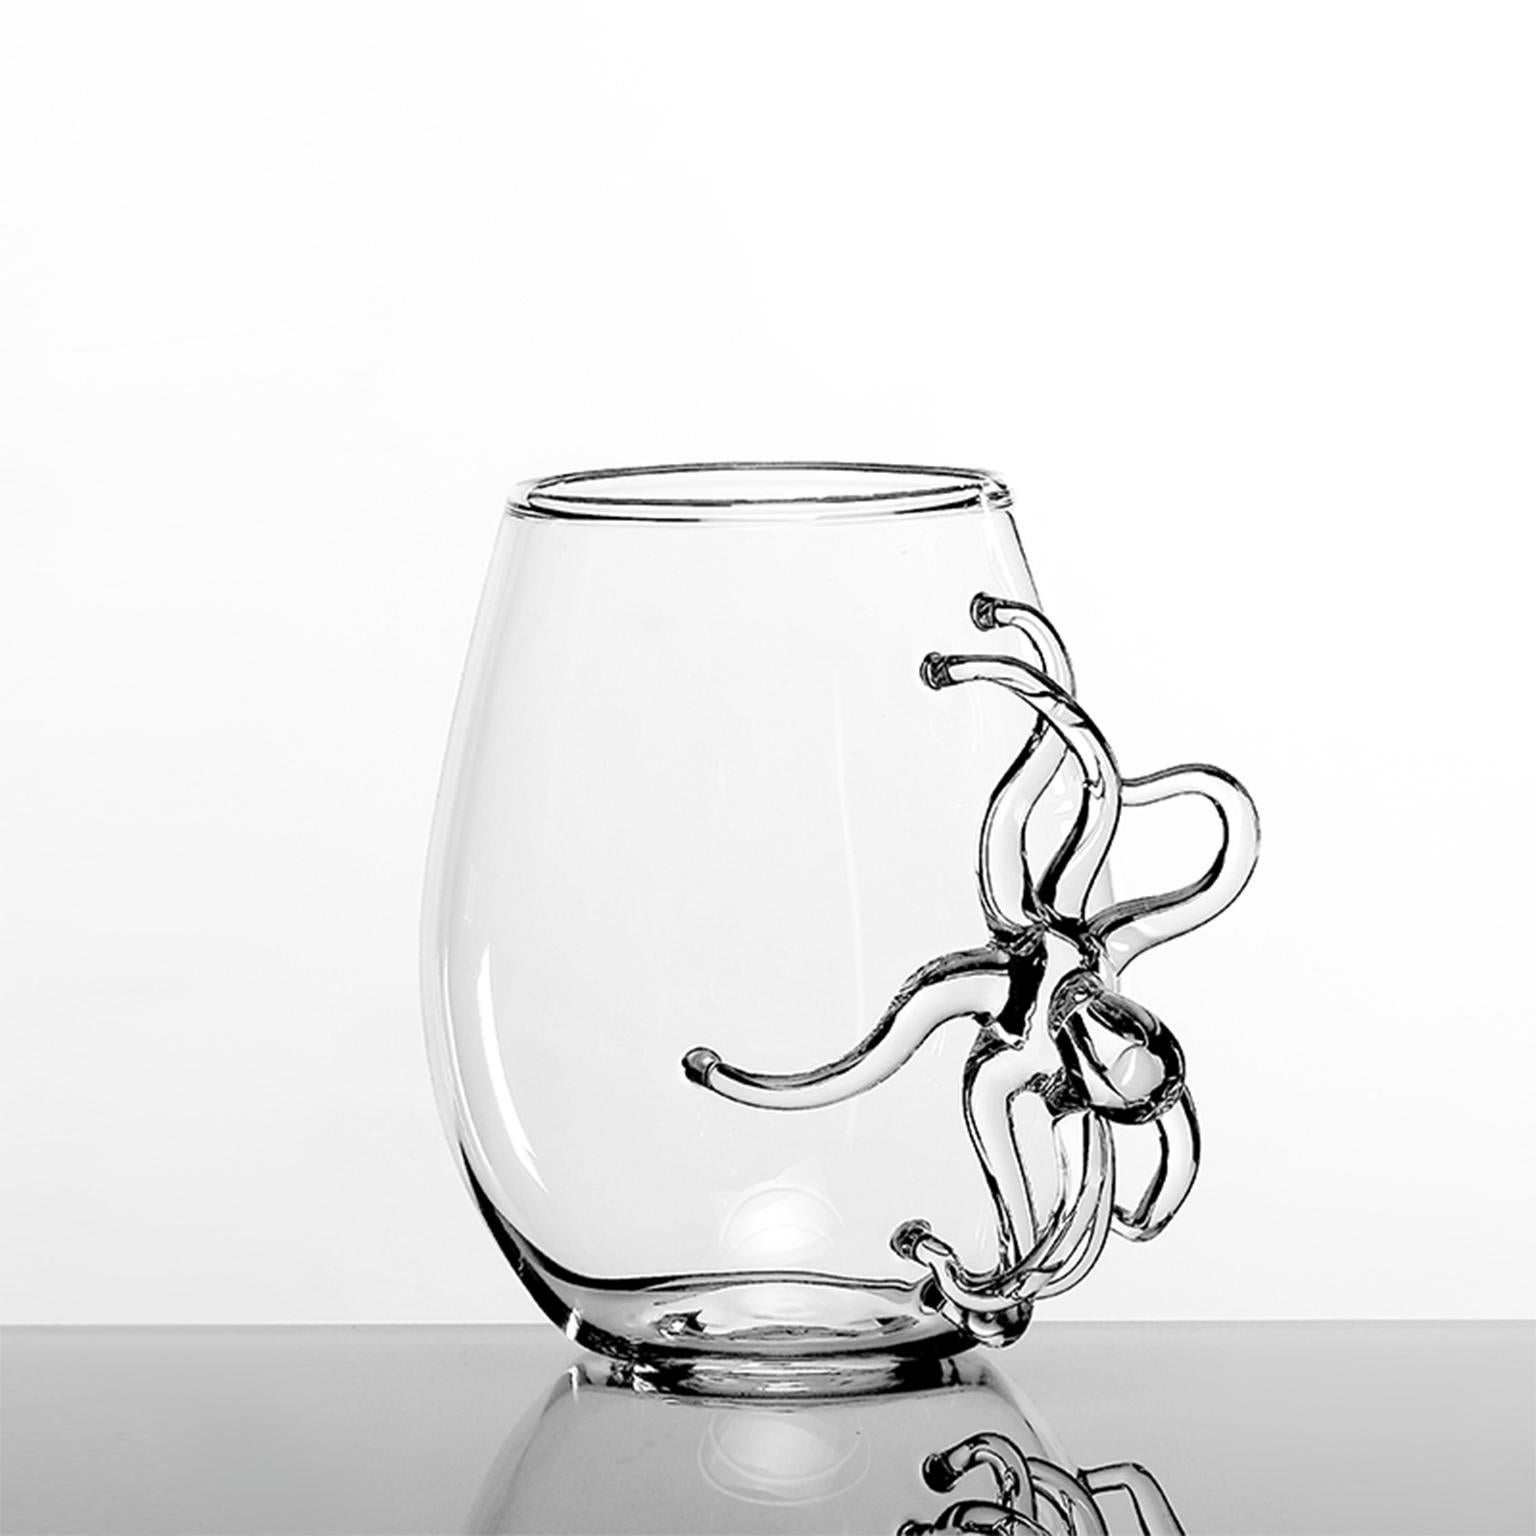 'Polpo-Glas'
Ein mundgeblasenes Glas von Simone Crestani
Polpo Glass ist eines der Stücke aus der Polpo Collection'S.

Die umhüllende Eleganz der Collection'S Polpo lässt einen glauben, dass das Tier tatsächlich die Karaffe umhüllt oder am Stiel des